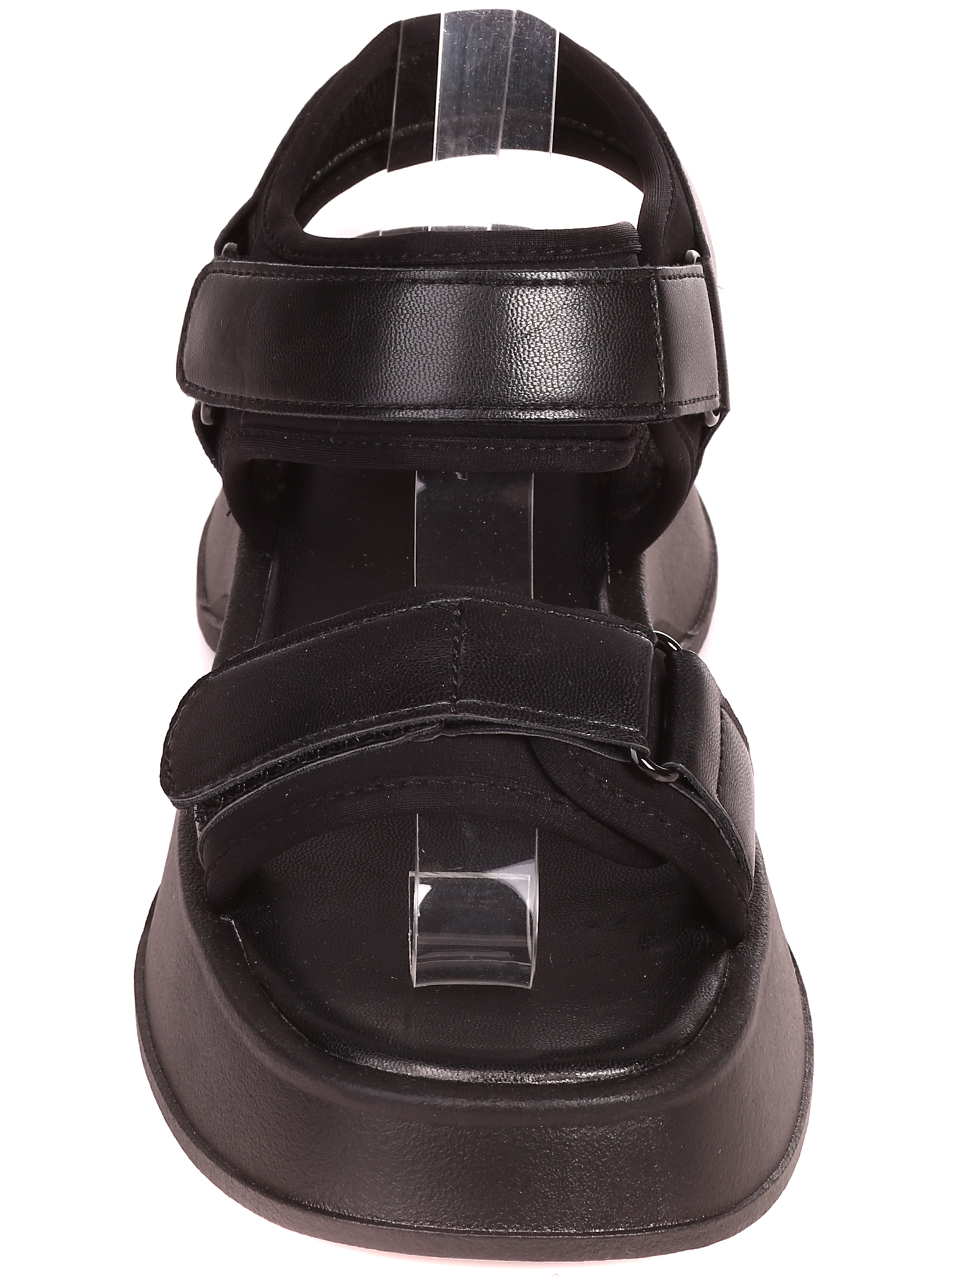 Ежедневни дамски комфортни сандали на платформа 4H-23107 black